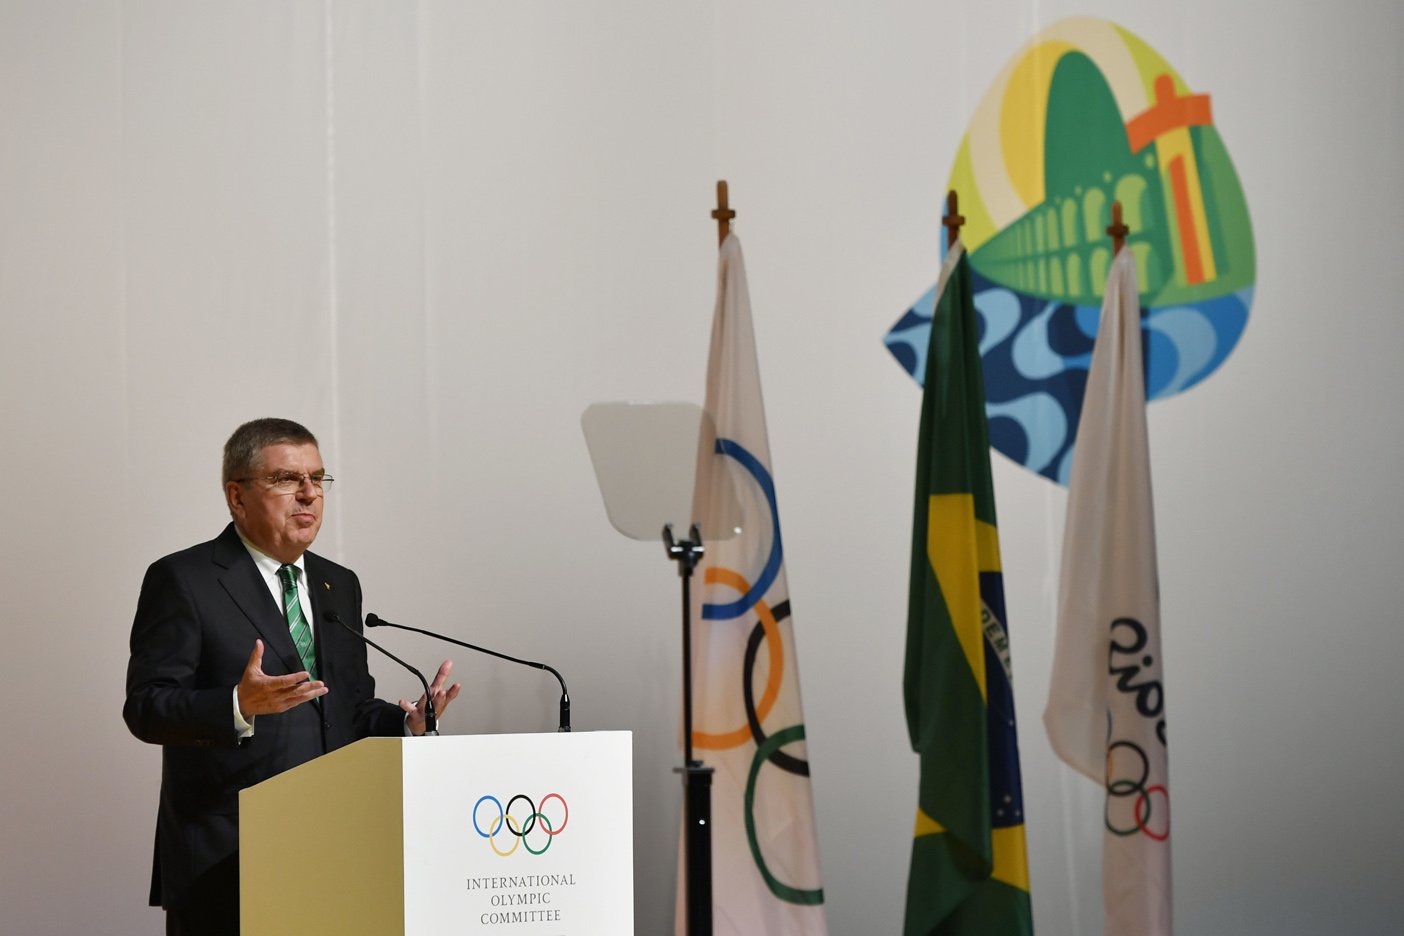  Tras escándalo de dopaje, COI autoriza que 271 atletas de Rusia participen en Rio 2016